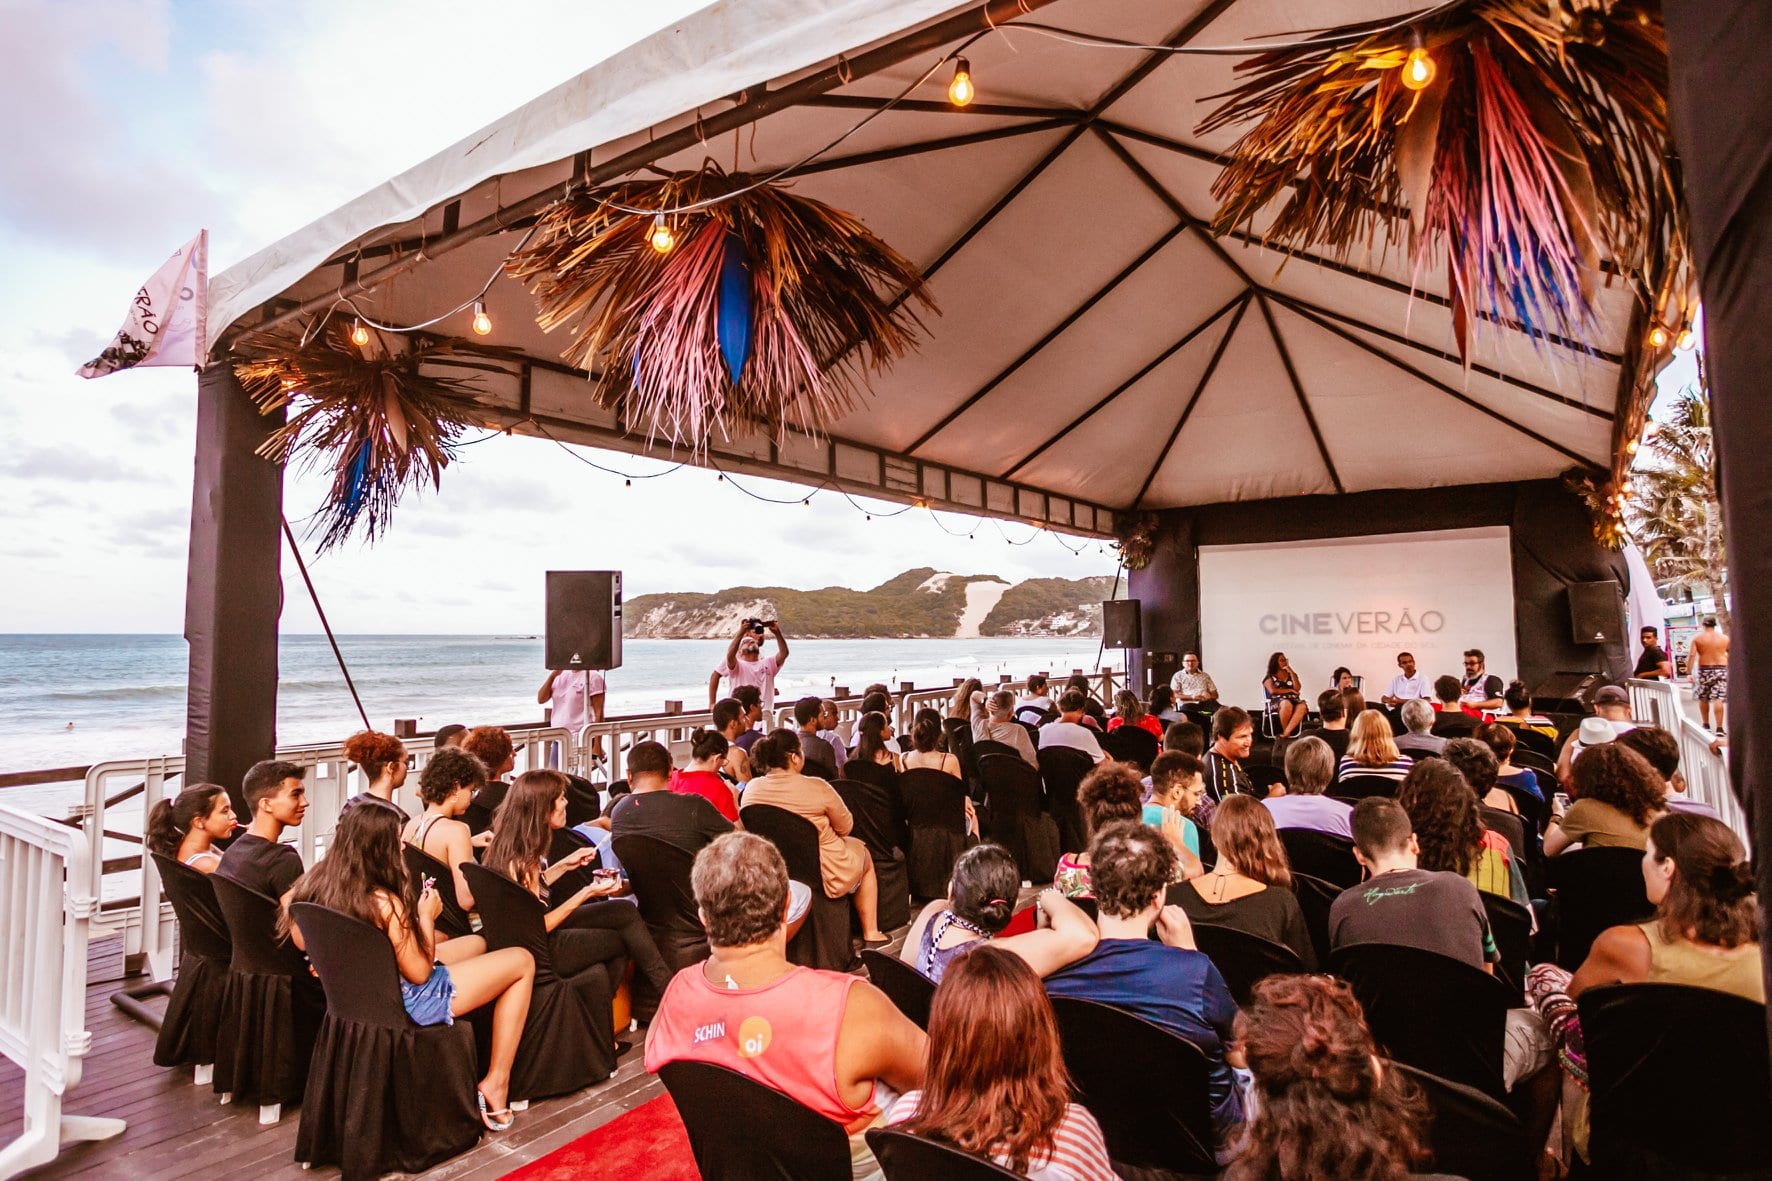 Cine Verão: Festival de cinema com vista para o mar